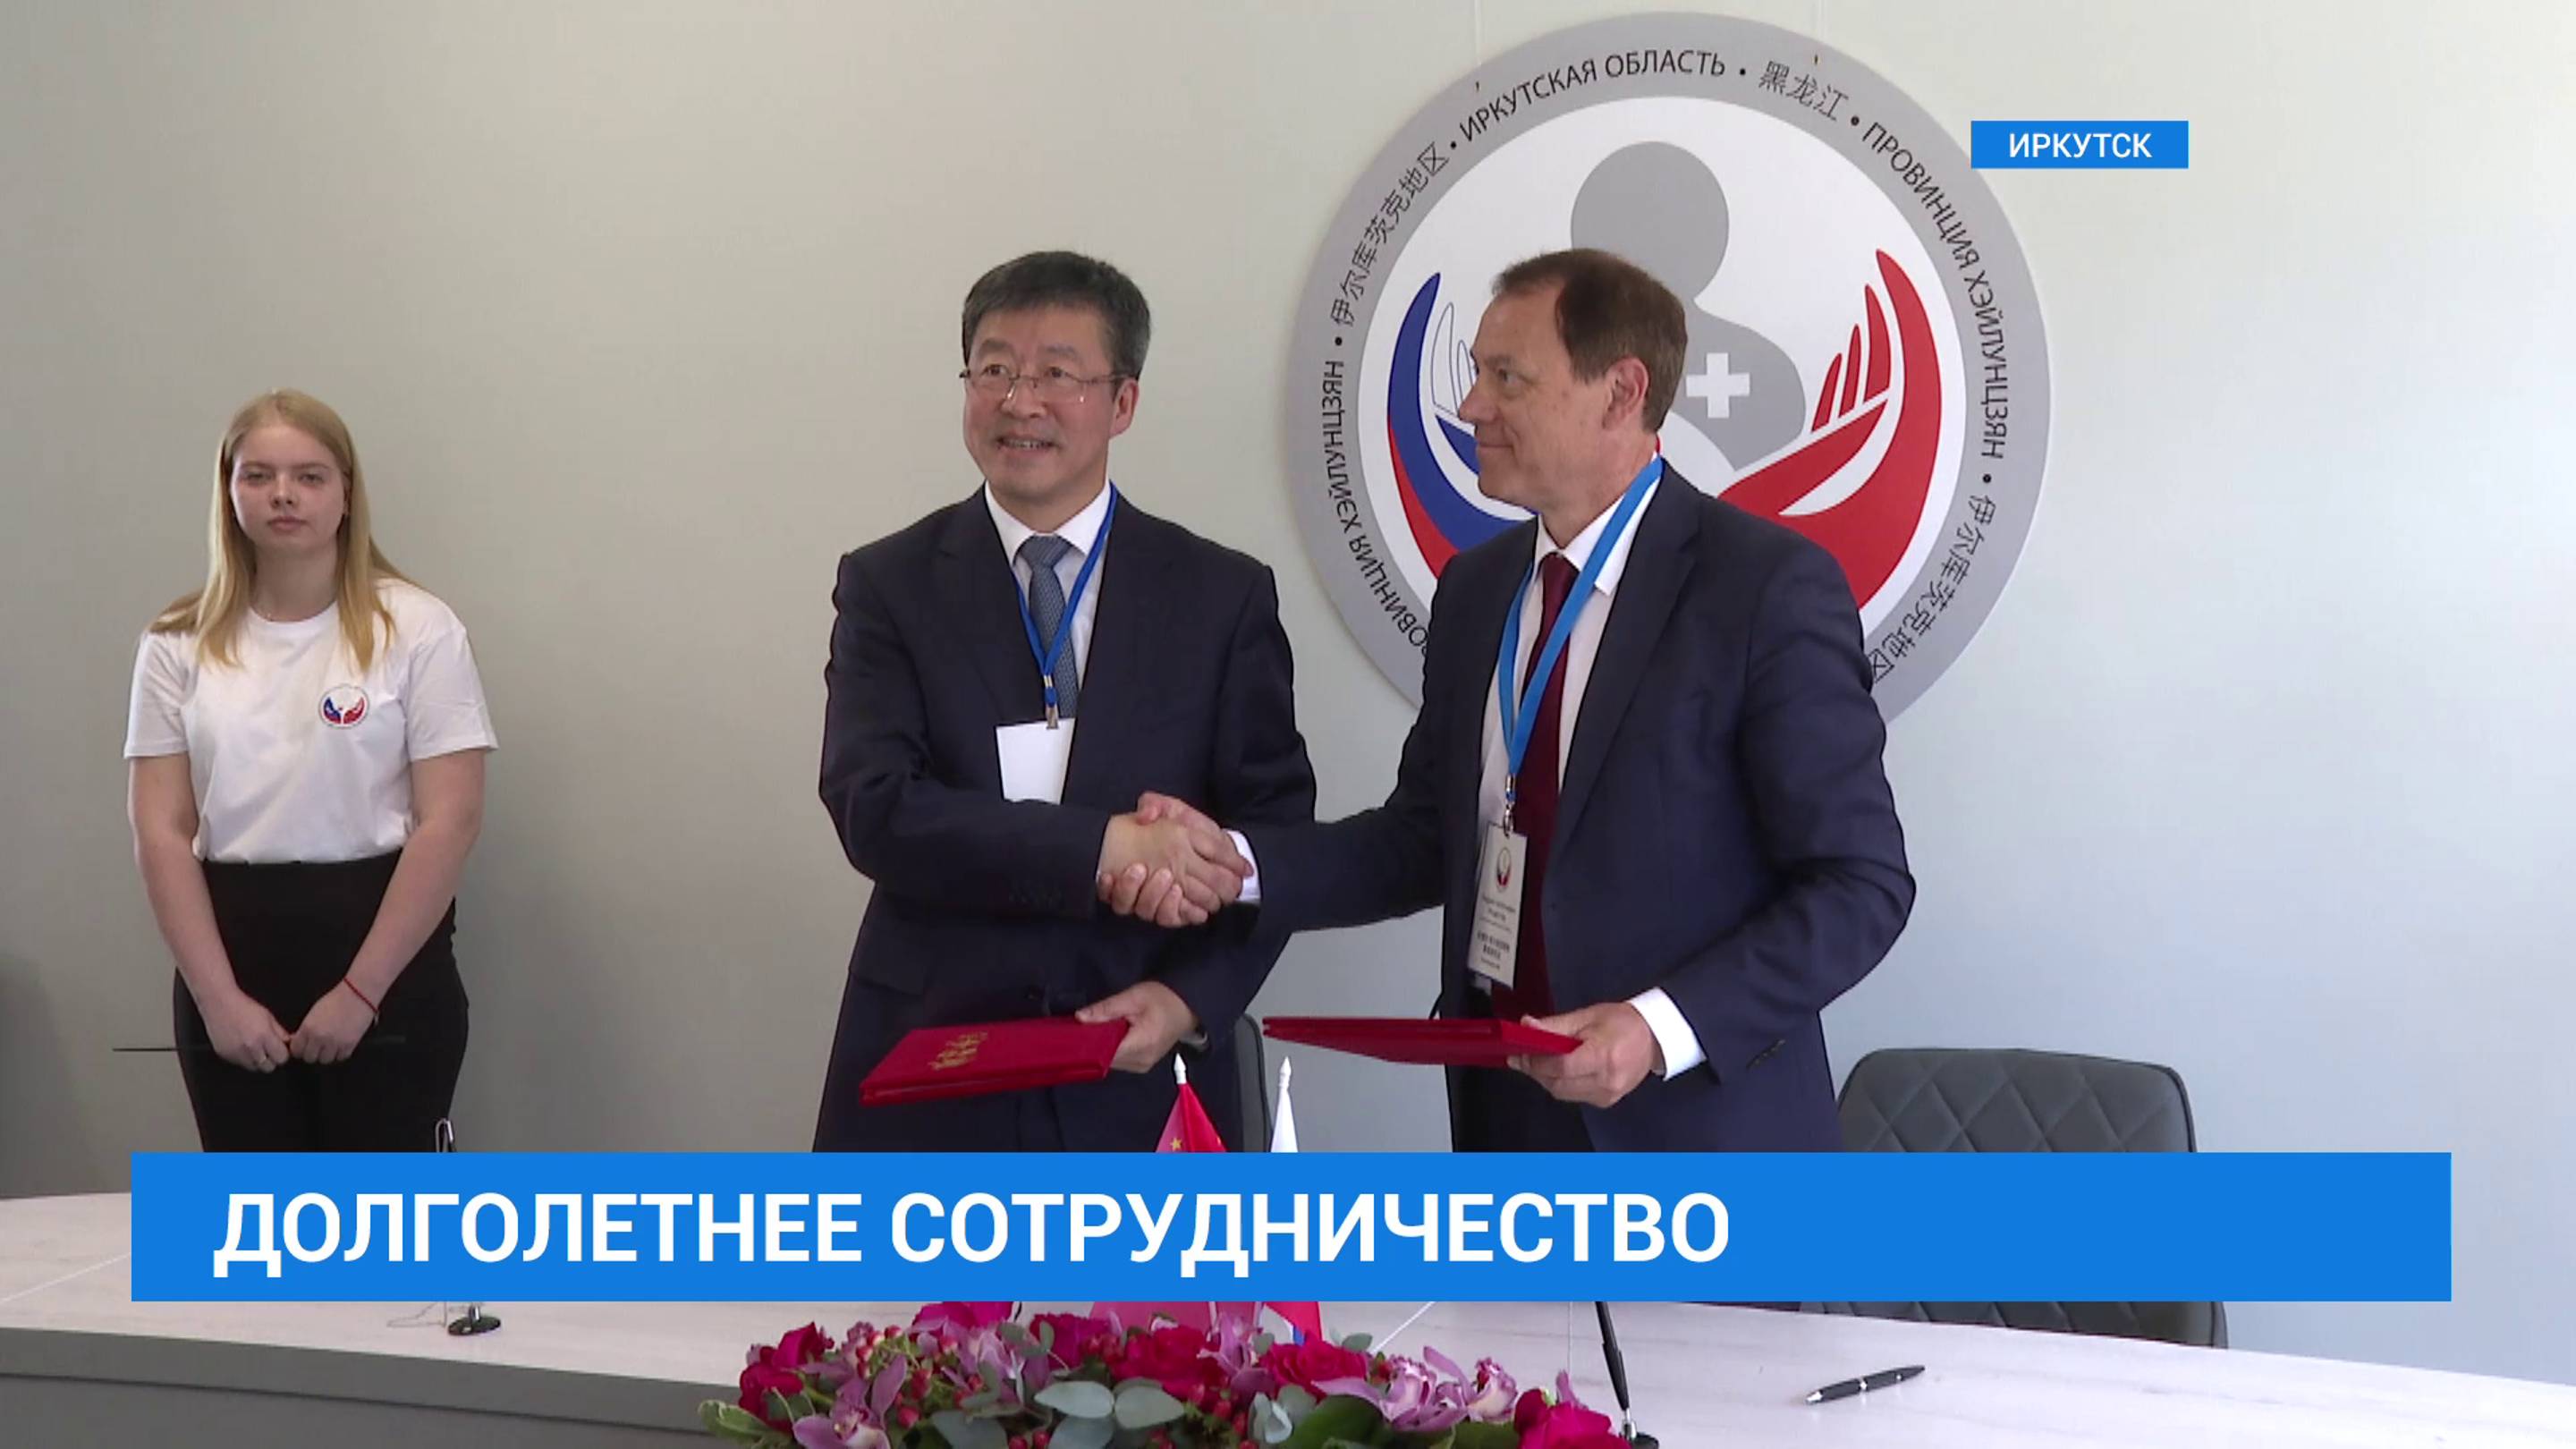 Иркутские и китайские медики договорились о сотрудничестве